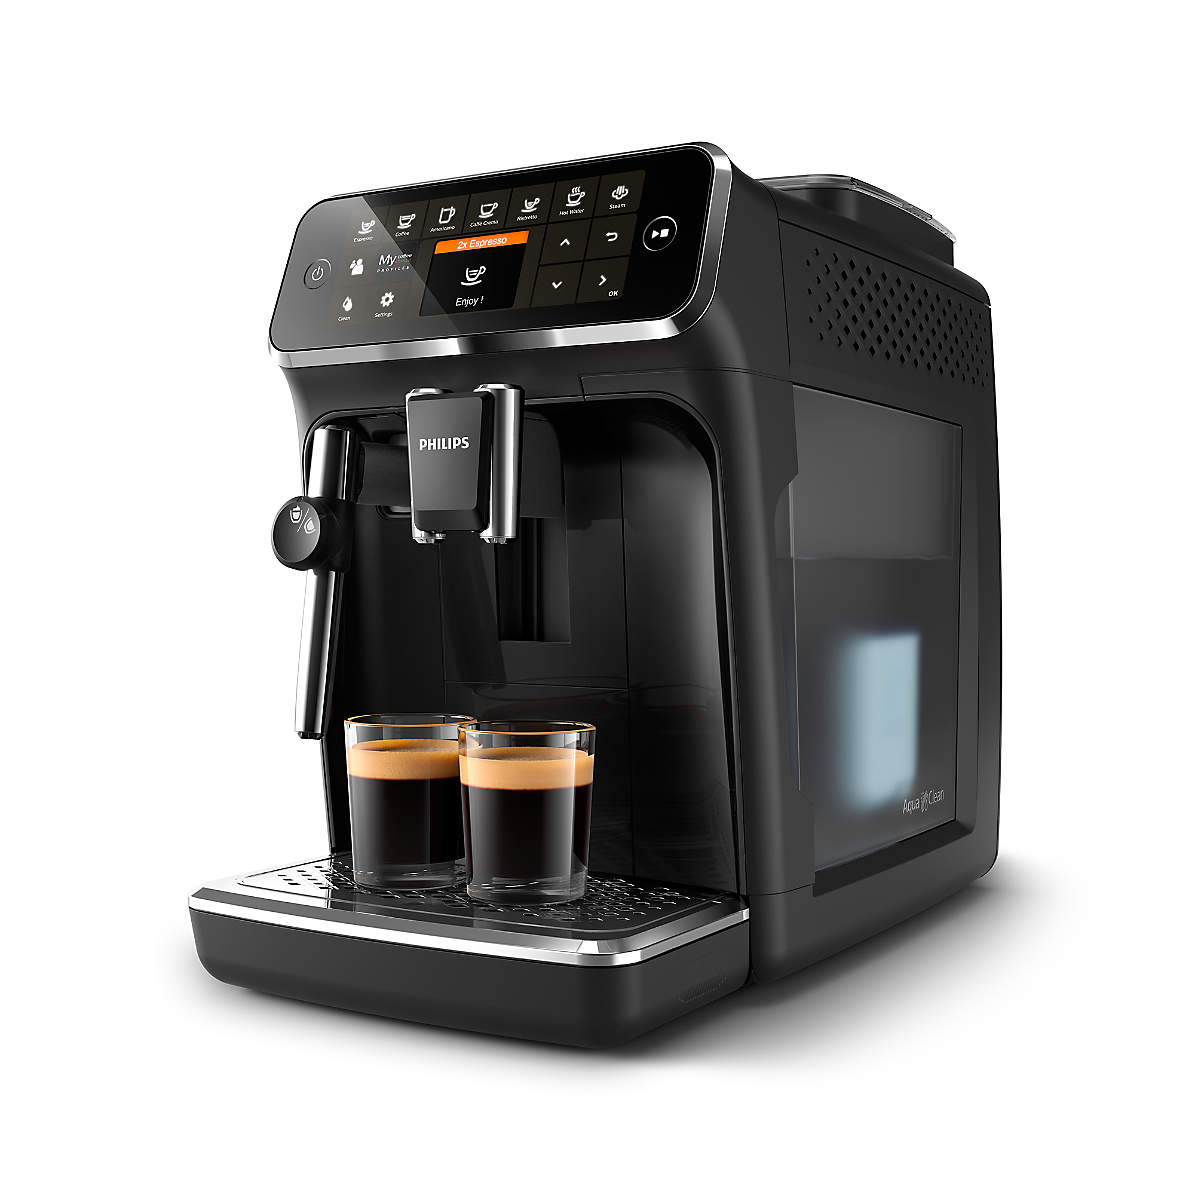 Cafetera Superautomática Dinámica – We Are Four Coffee